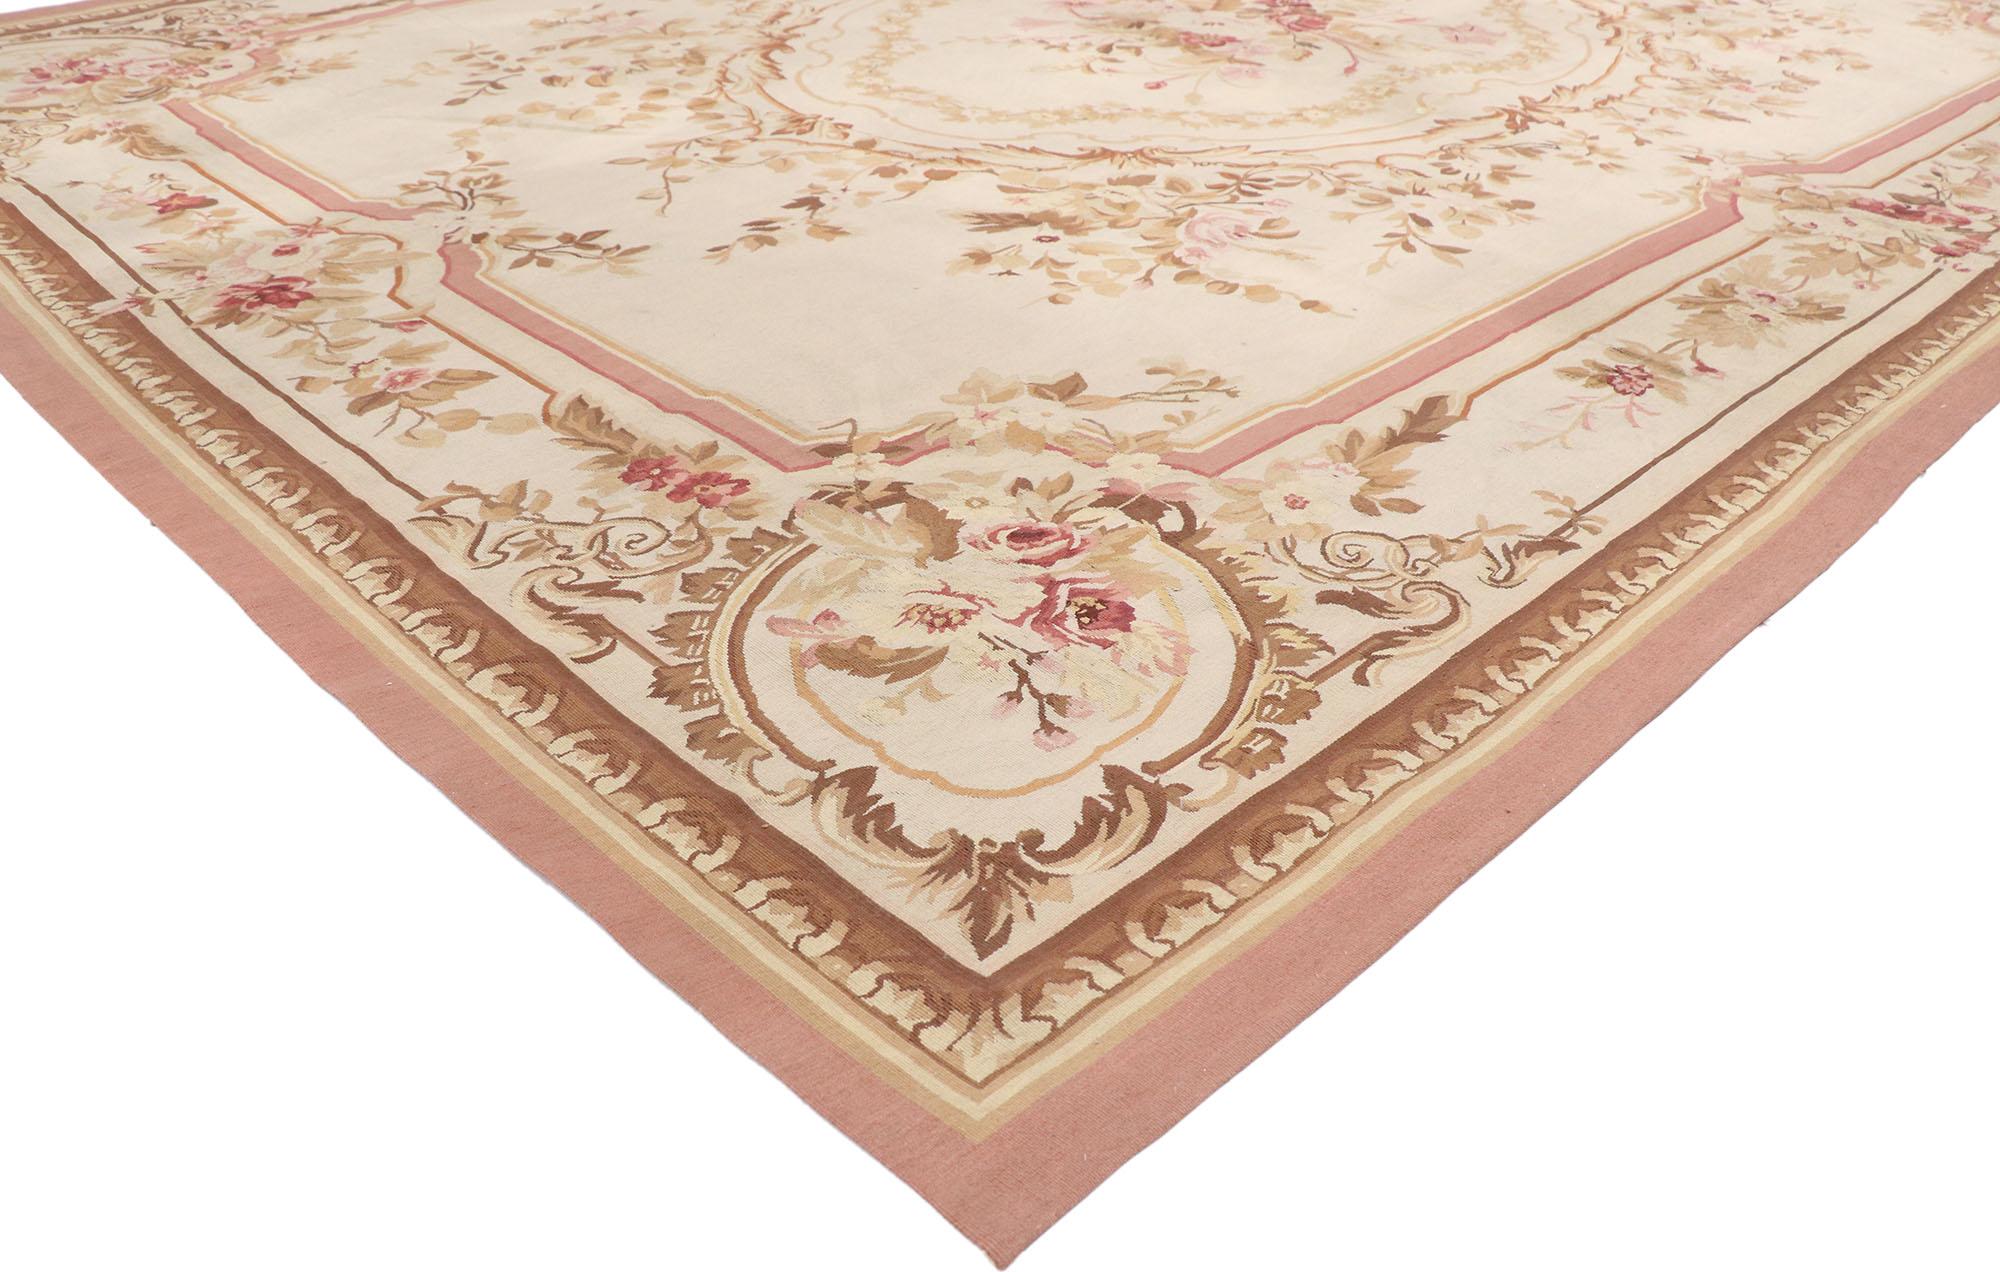 77645 Vieux tapis français d'Aubusson avec un style rococo romantique. Florissant en technique et en tendance depuis le milieu du XVIIe siècle pendant près de deux cents ans, jusqu'au début du XXe siècle, ce tapis d'Aubusson français vintage en